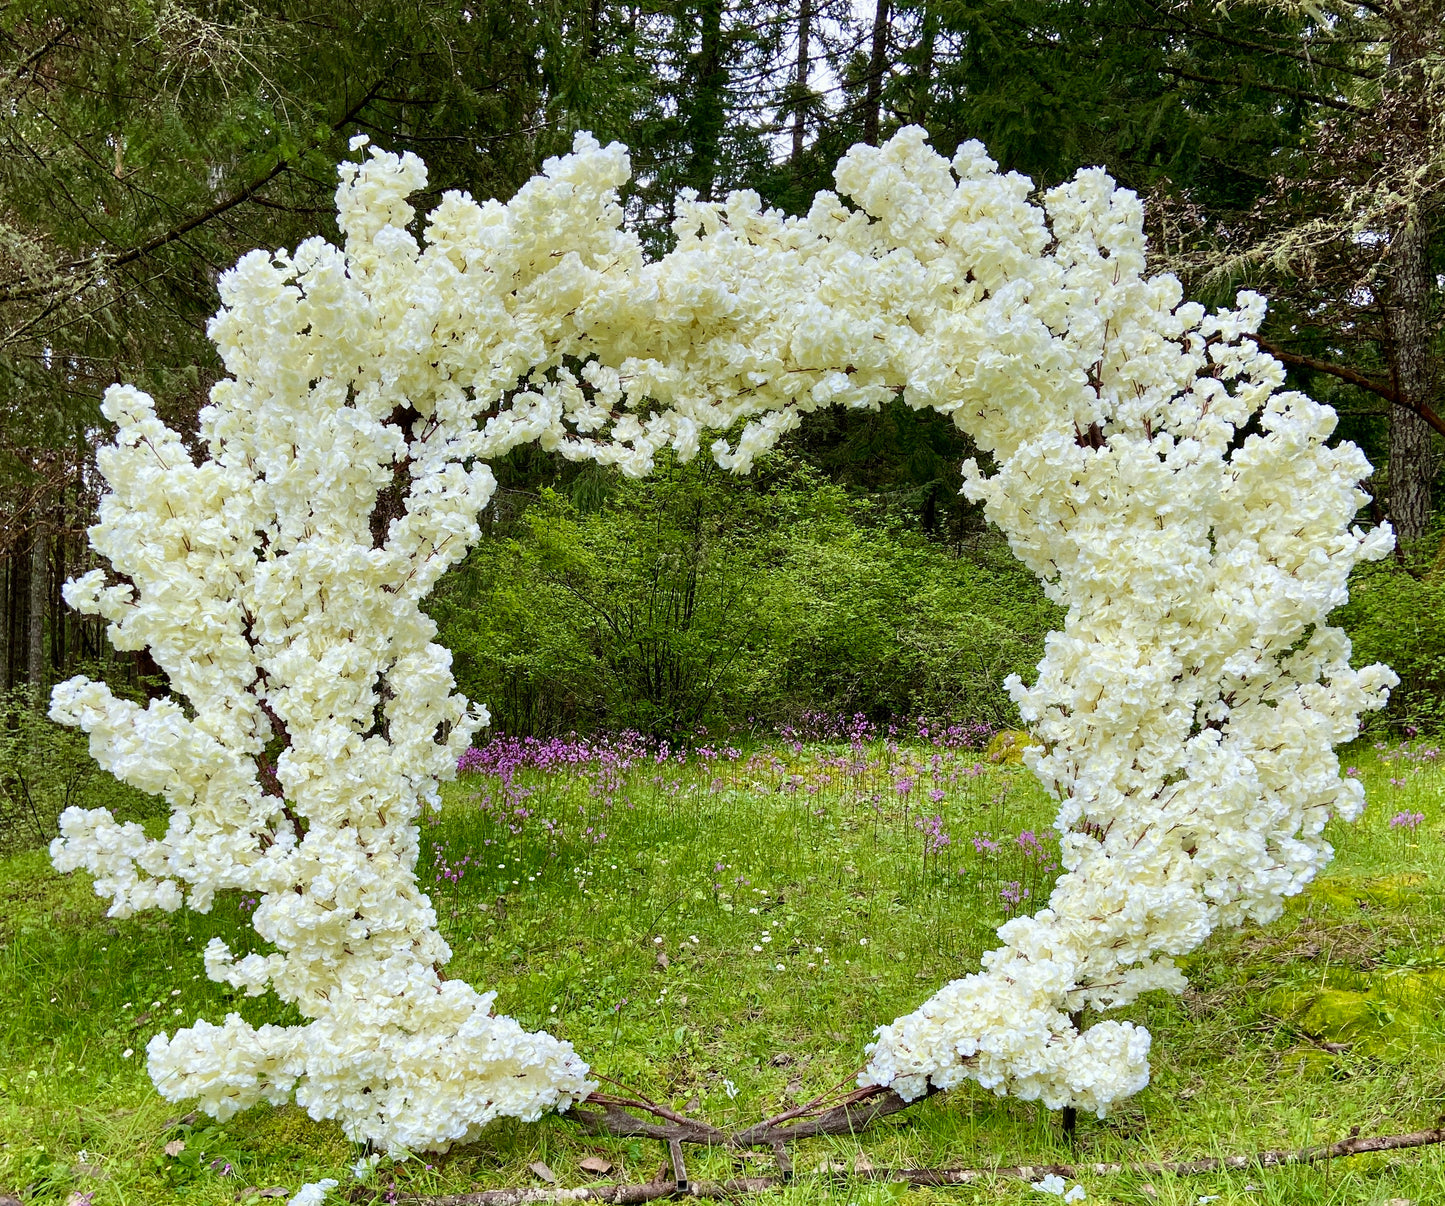 White Flower Archway